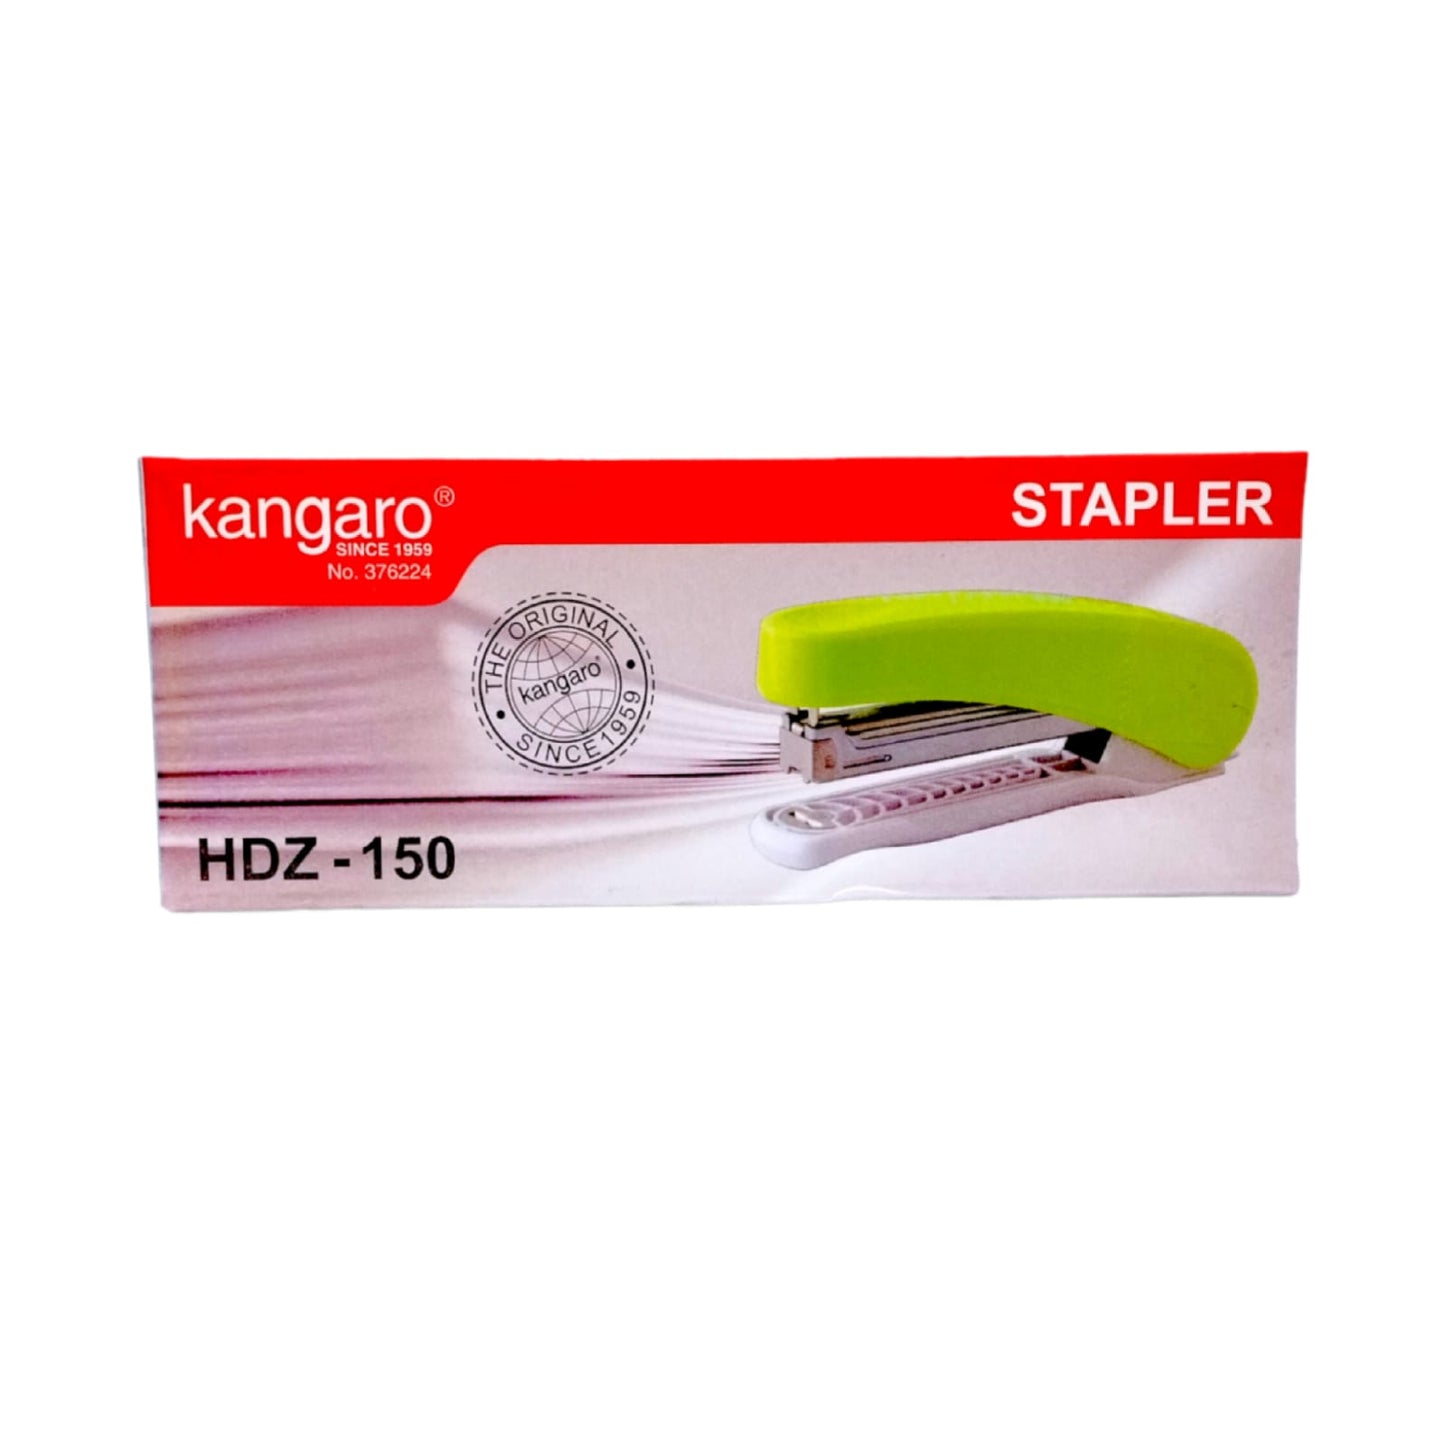 Kangaro Stapler HDZ- 150 || دباسة كانغارو ١٥٠